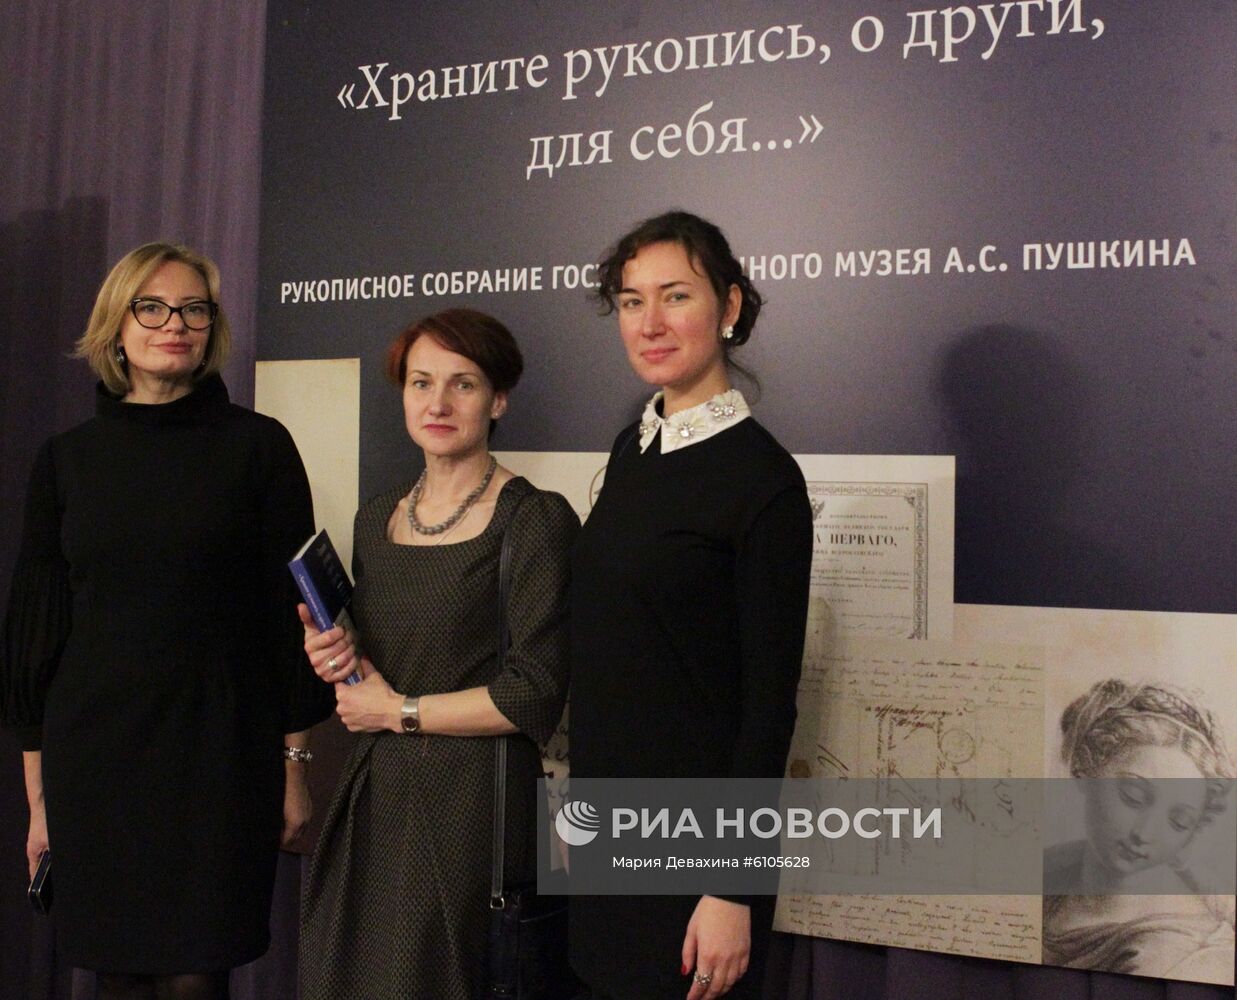 Выставка "Храните рукопись" в Москве